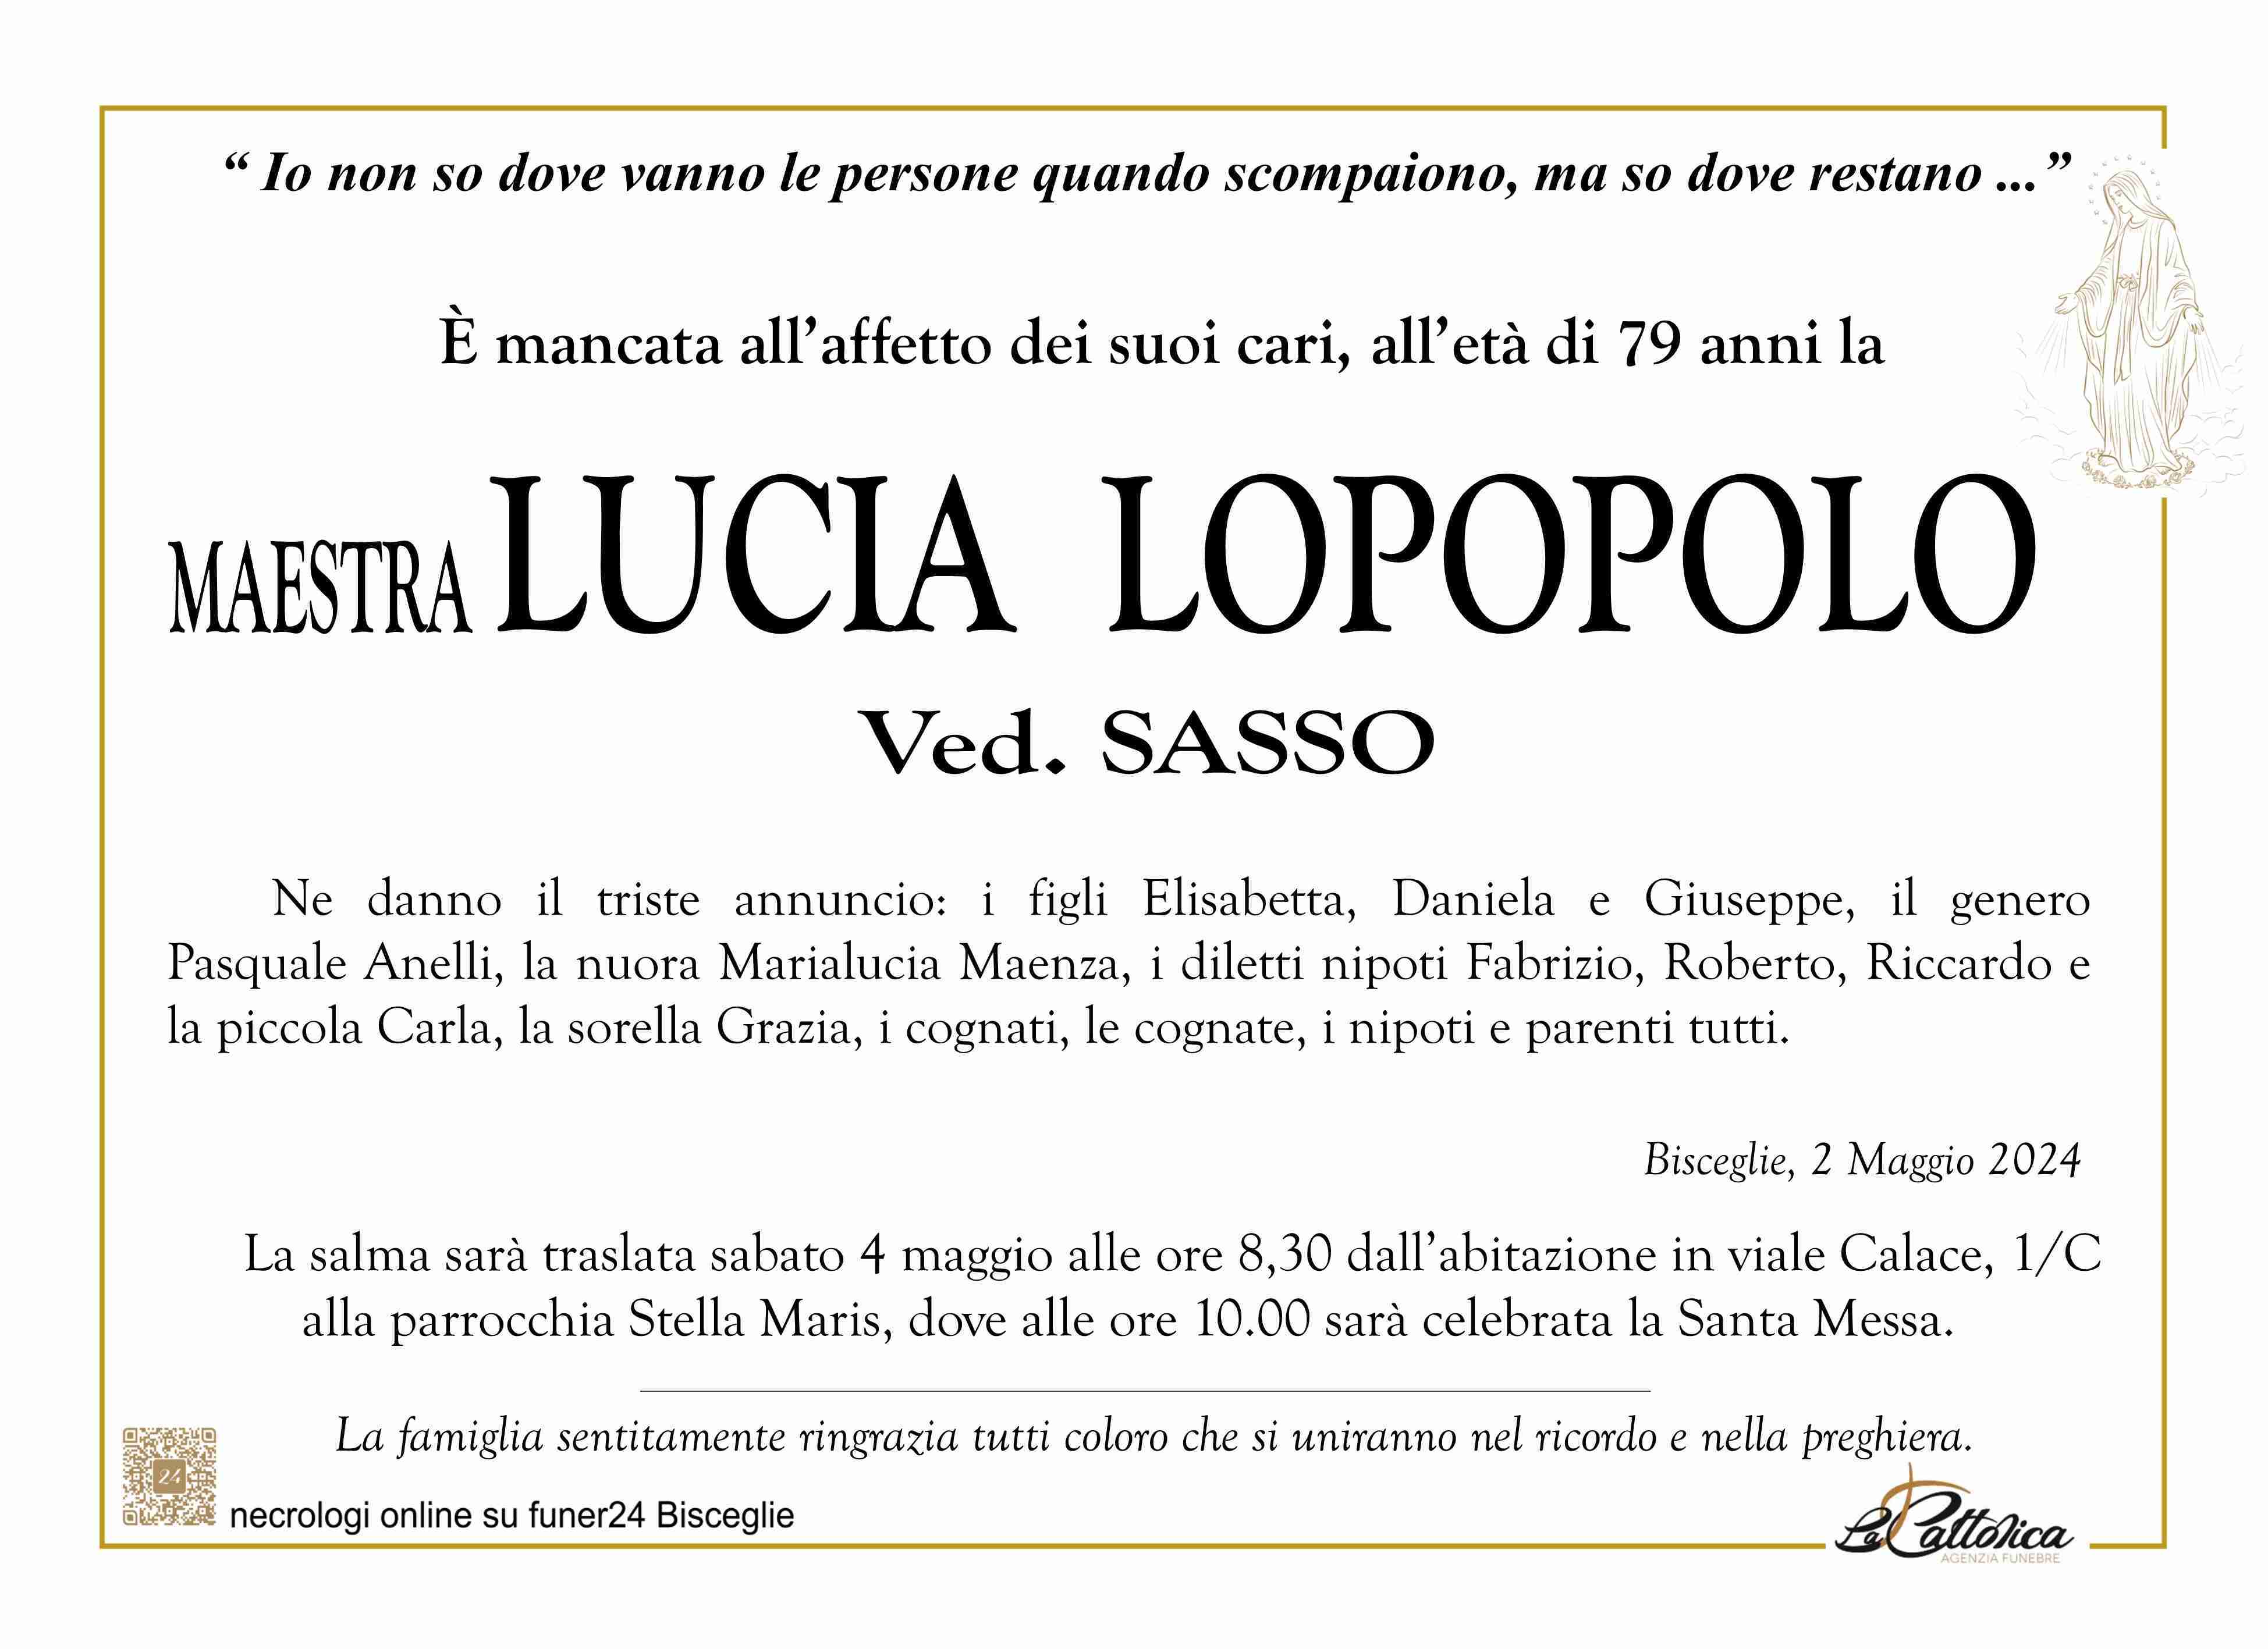 Lucia Lopopolo